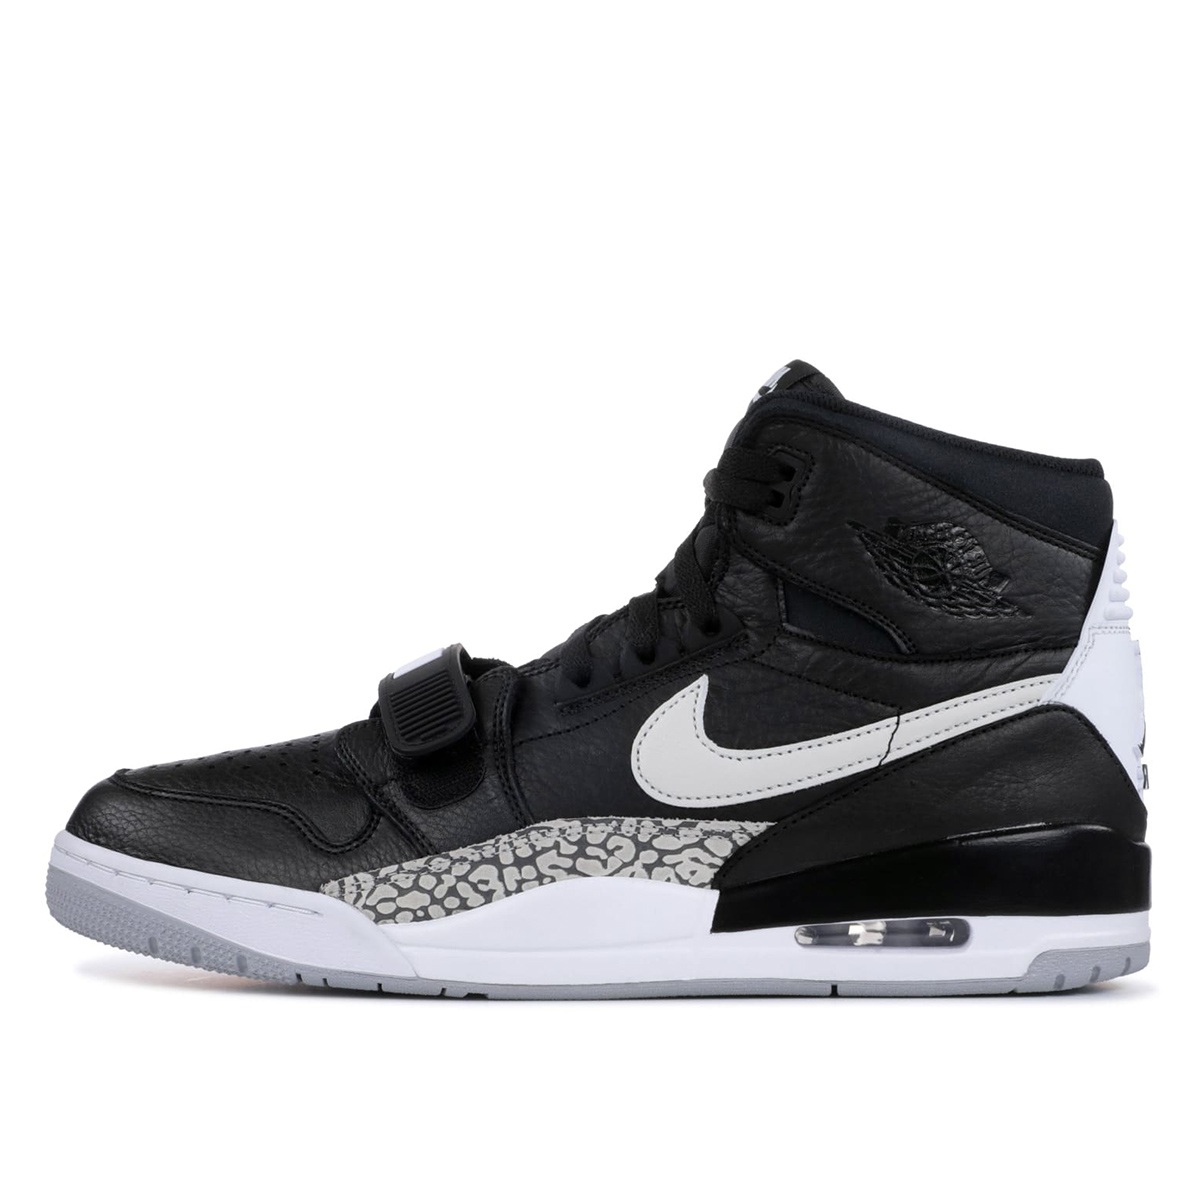 Air Jordan Nike AJ Legacy 312 Black White | AV3922-001 - KLEKT